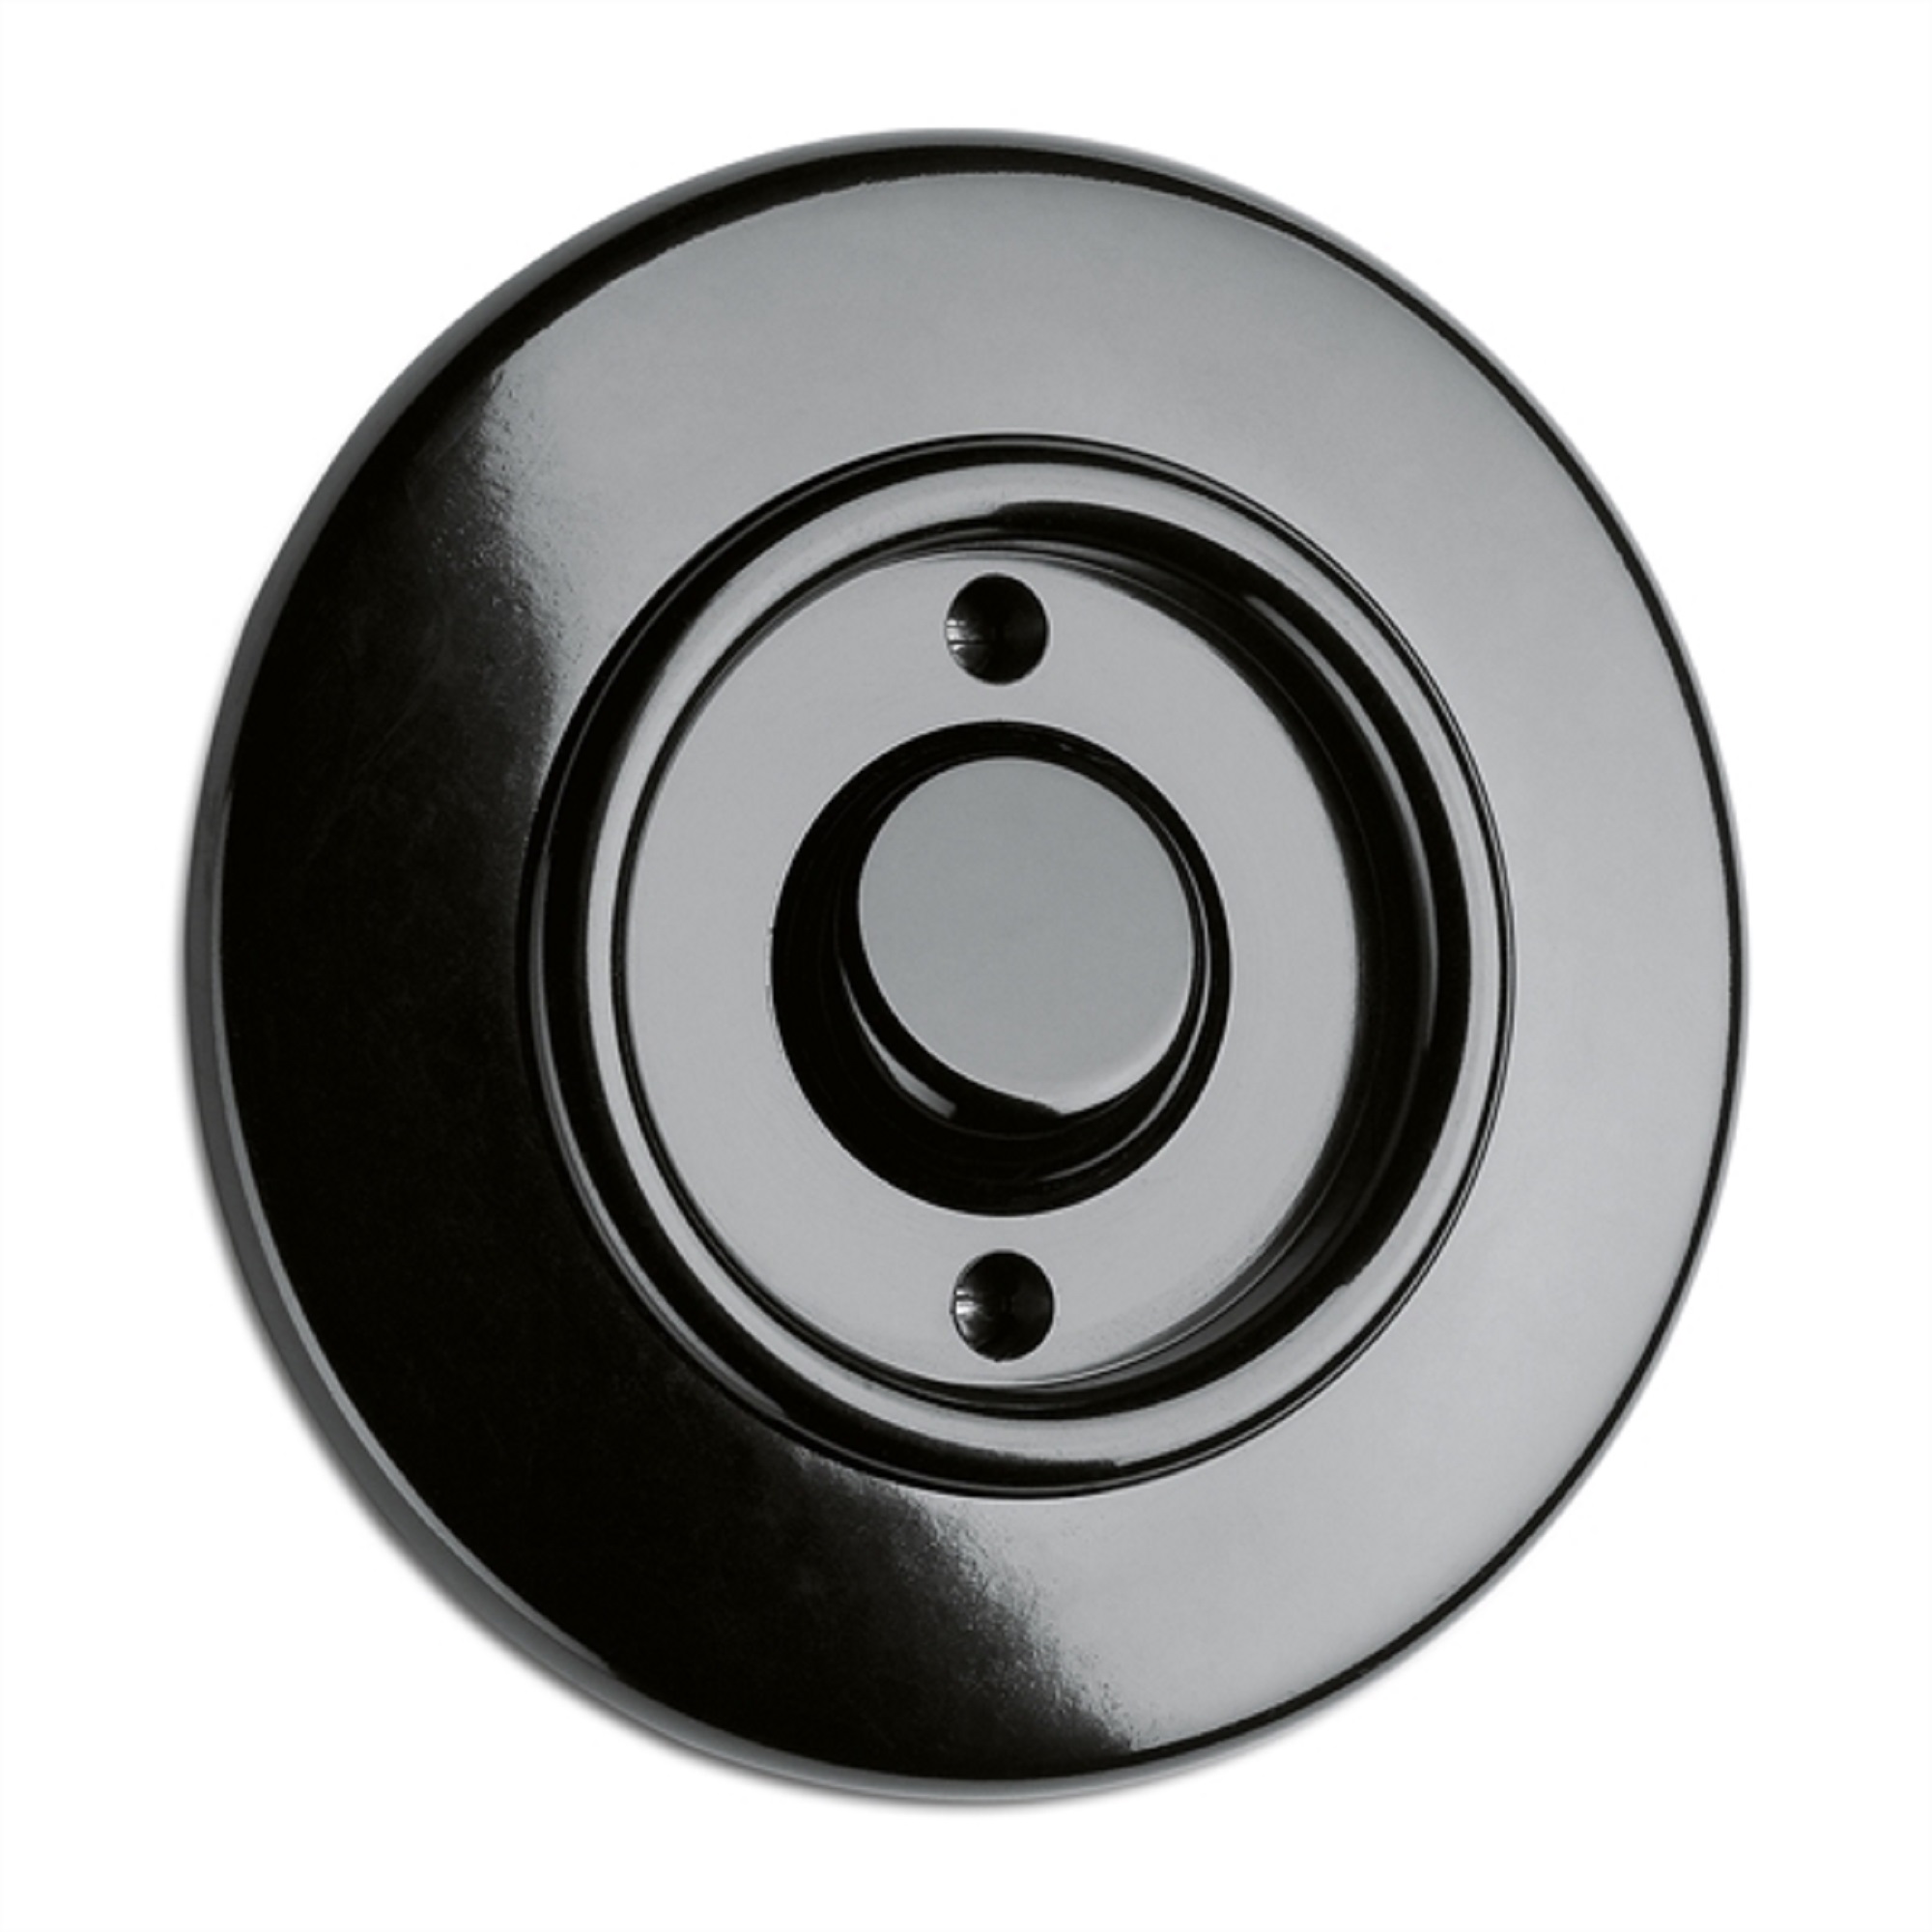 900.0024.BS Wipptaster ohne Symbol, Unterputz-Schaltersystem Bakelit schwarz mit runder Abdeckung